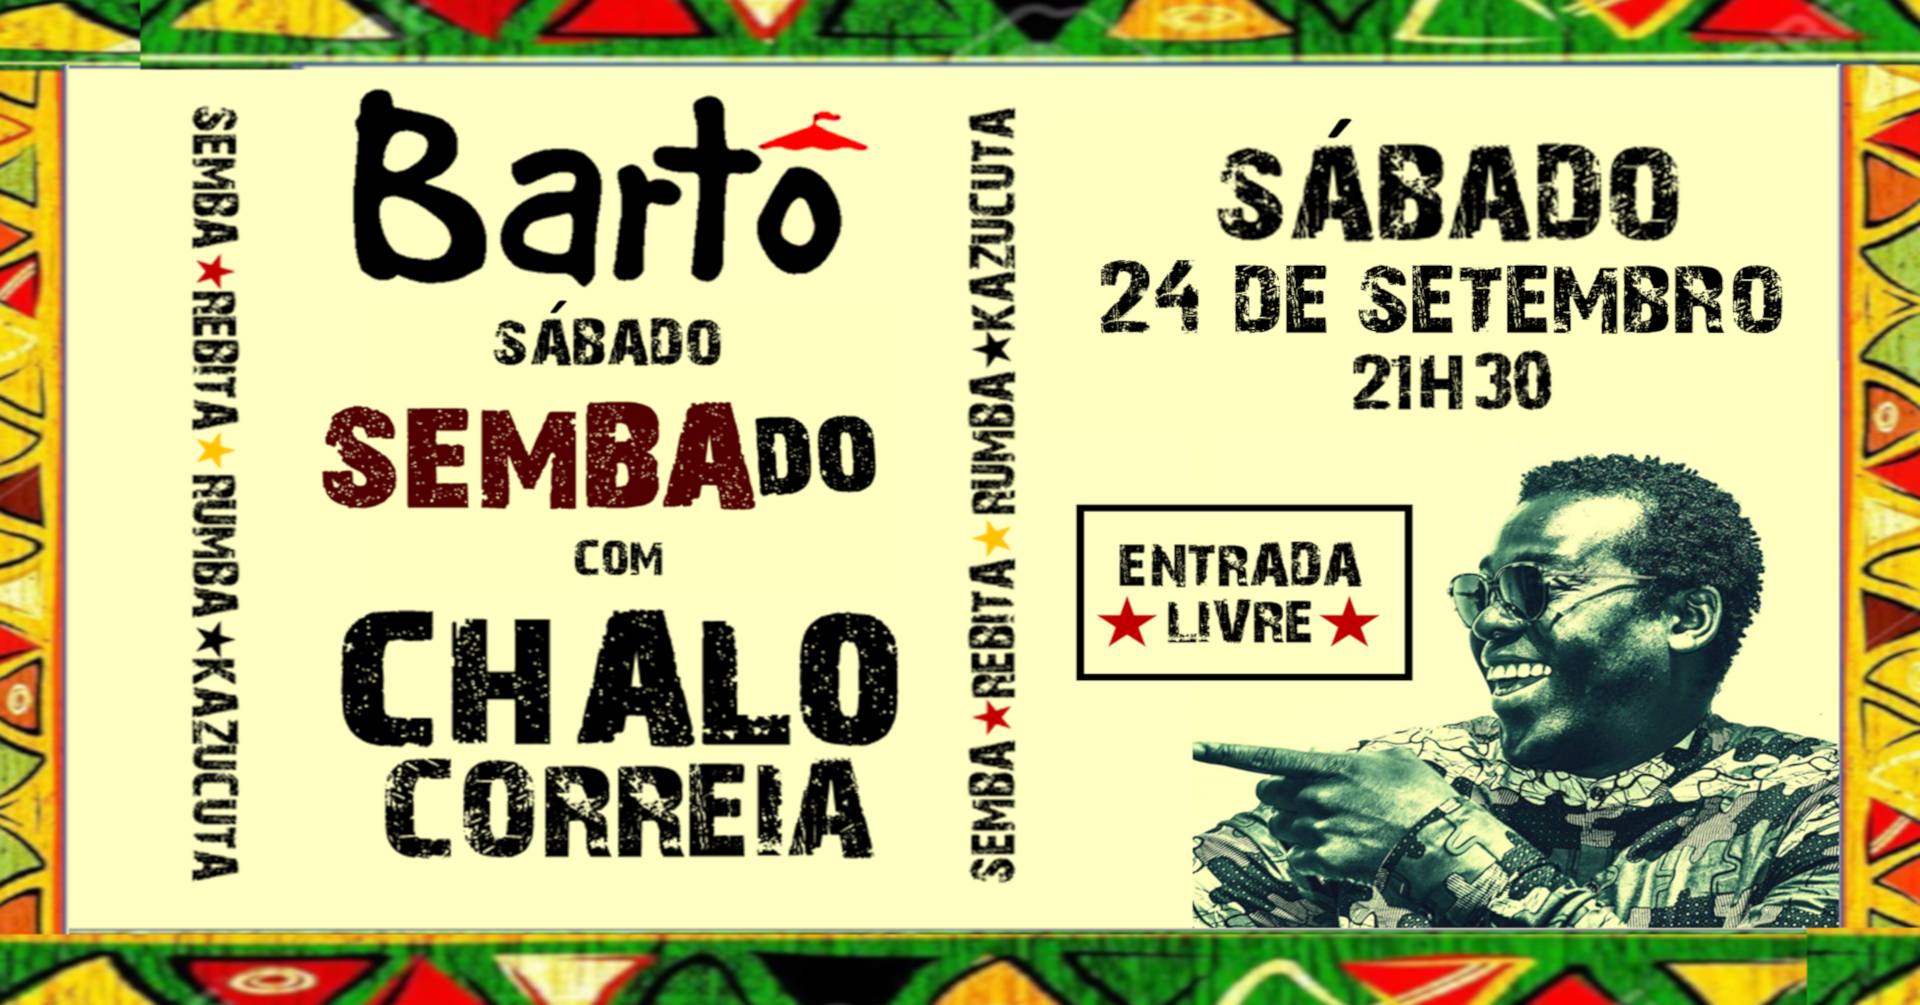 Sábado SEMBAdo | Chalo Correia no Bartô